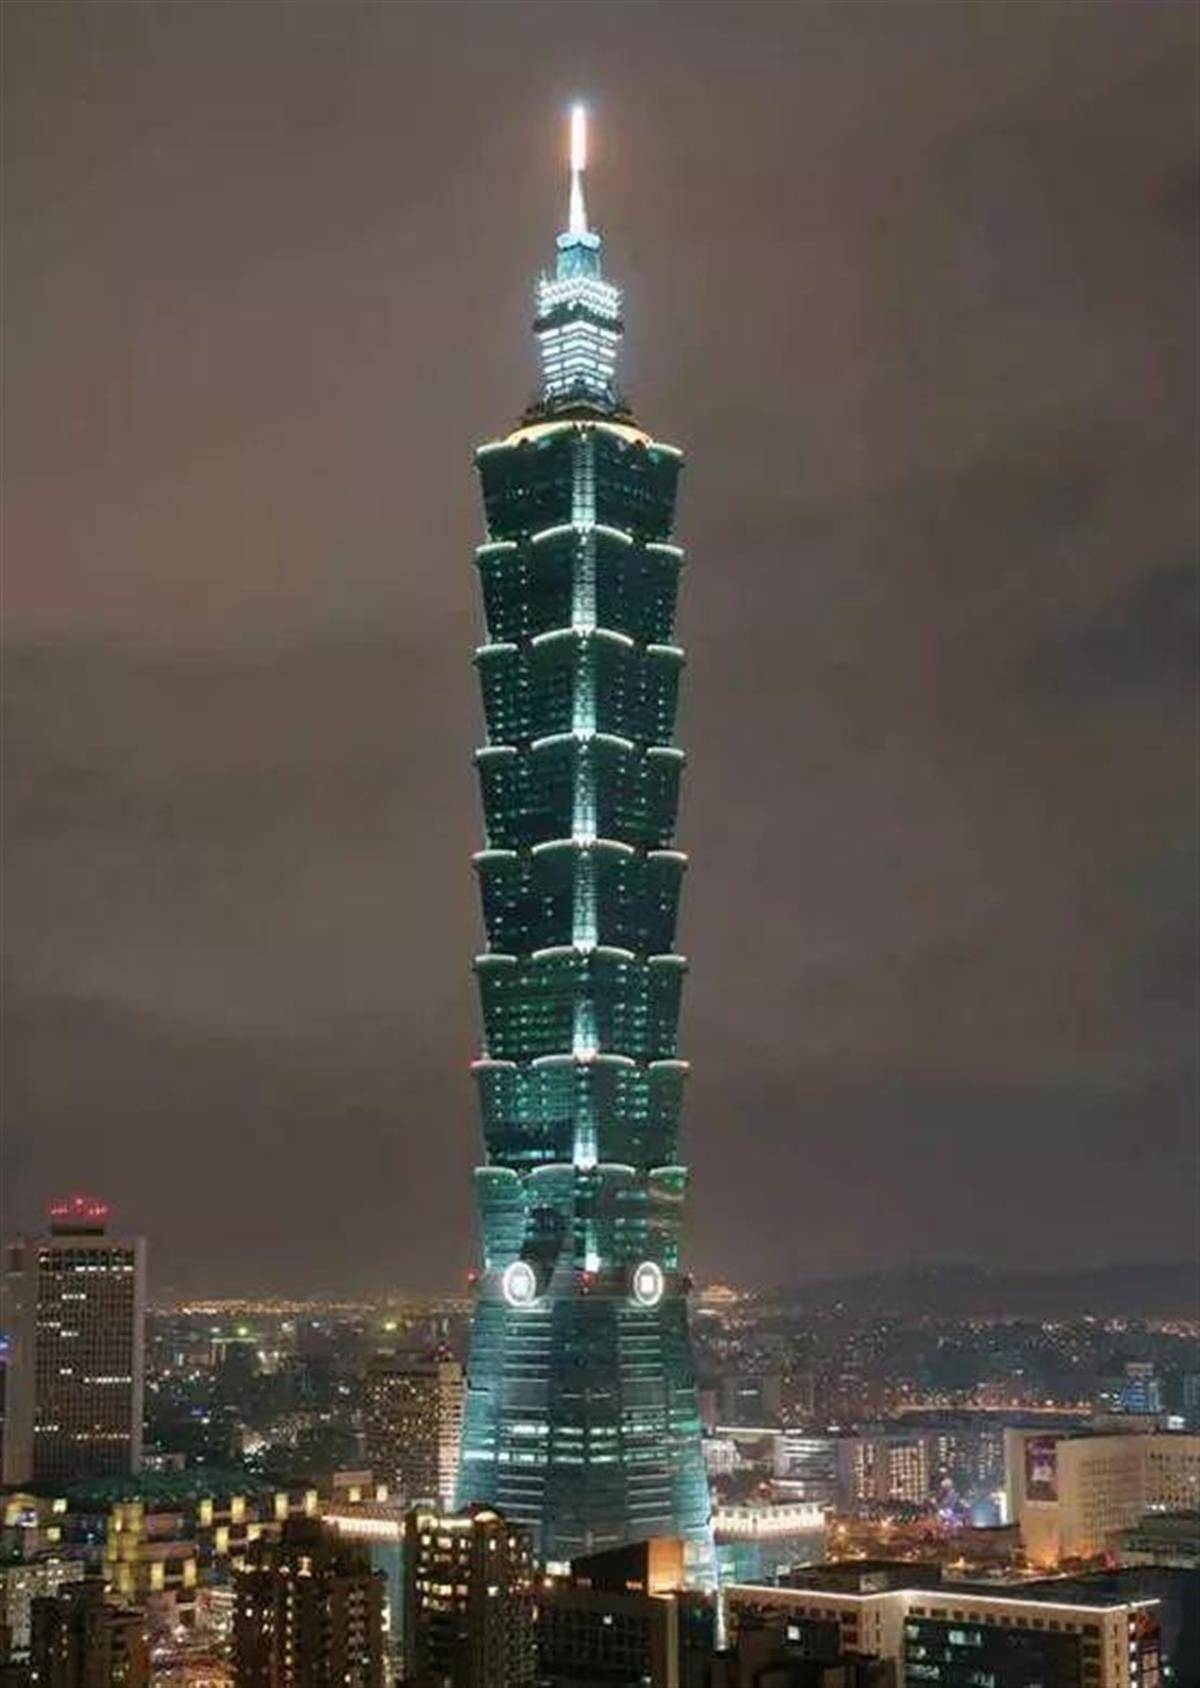 台北101大楼20多年扛过强震台风,靠这个定楼神球